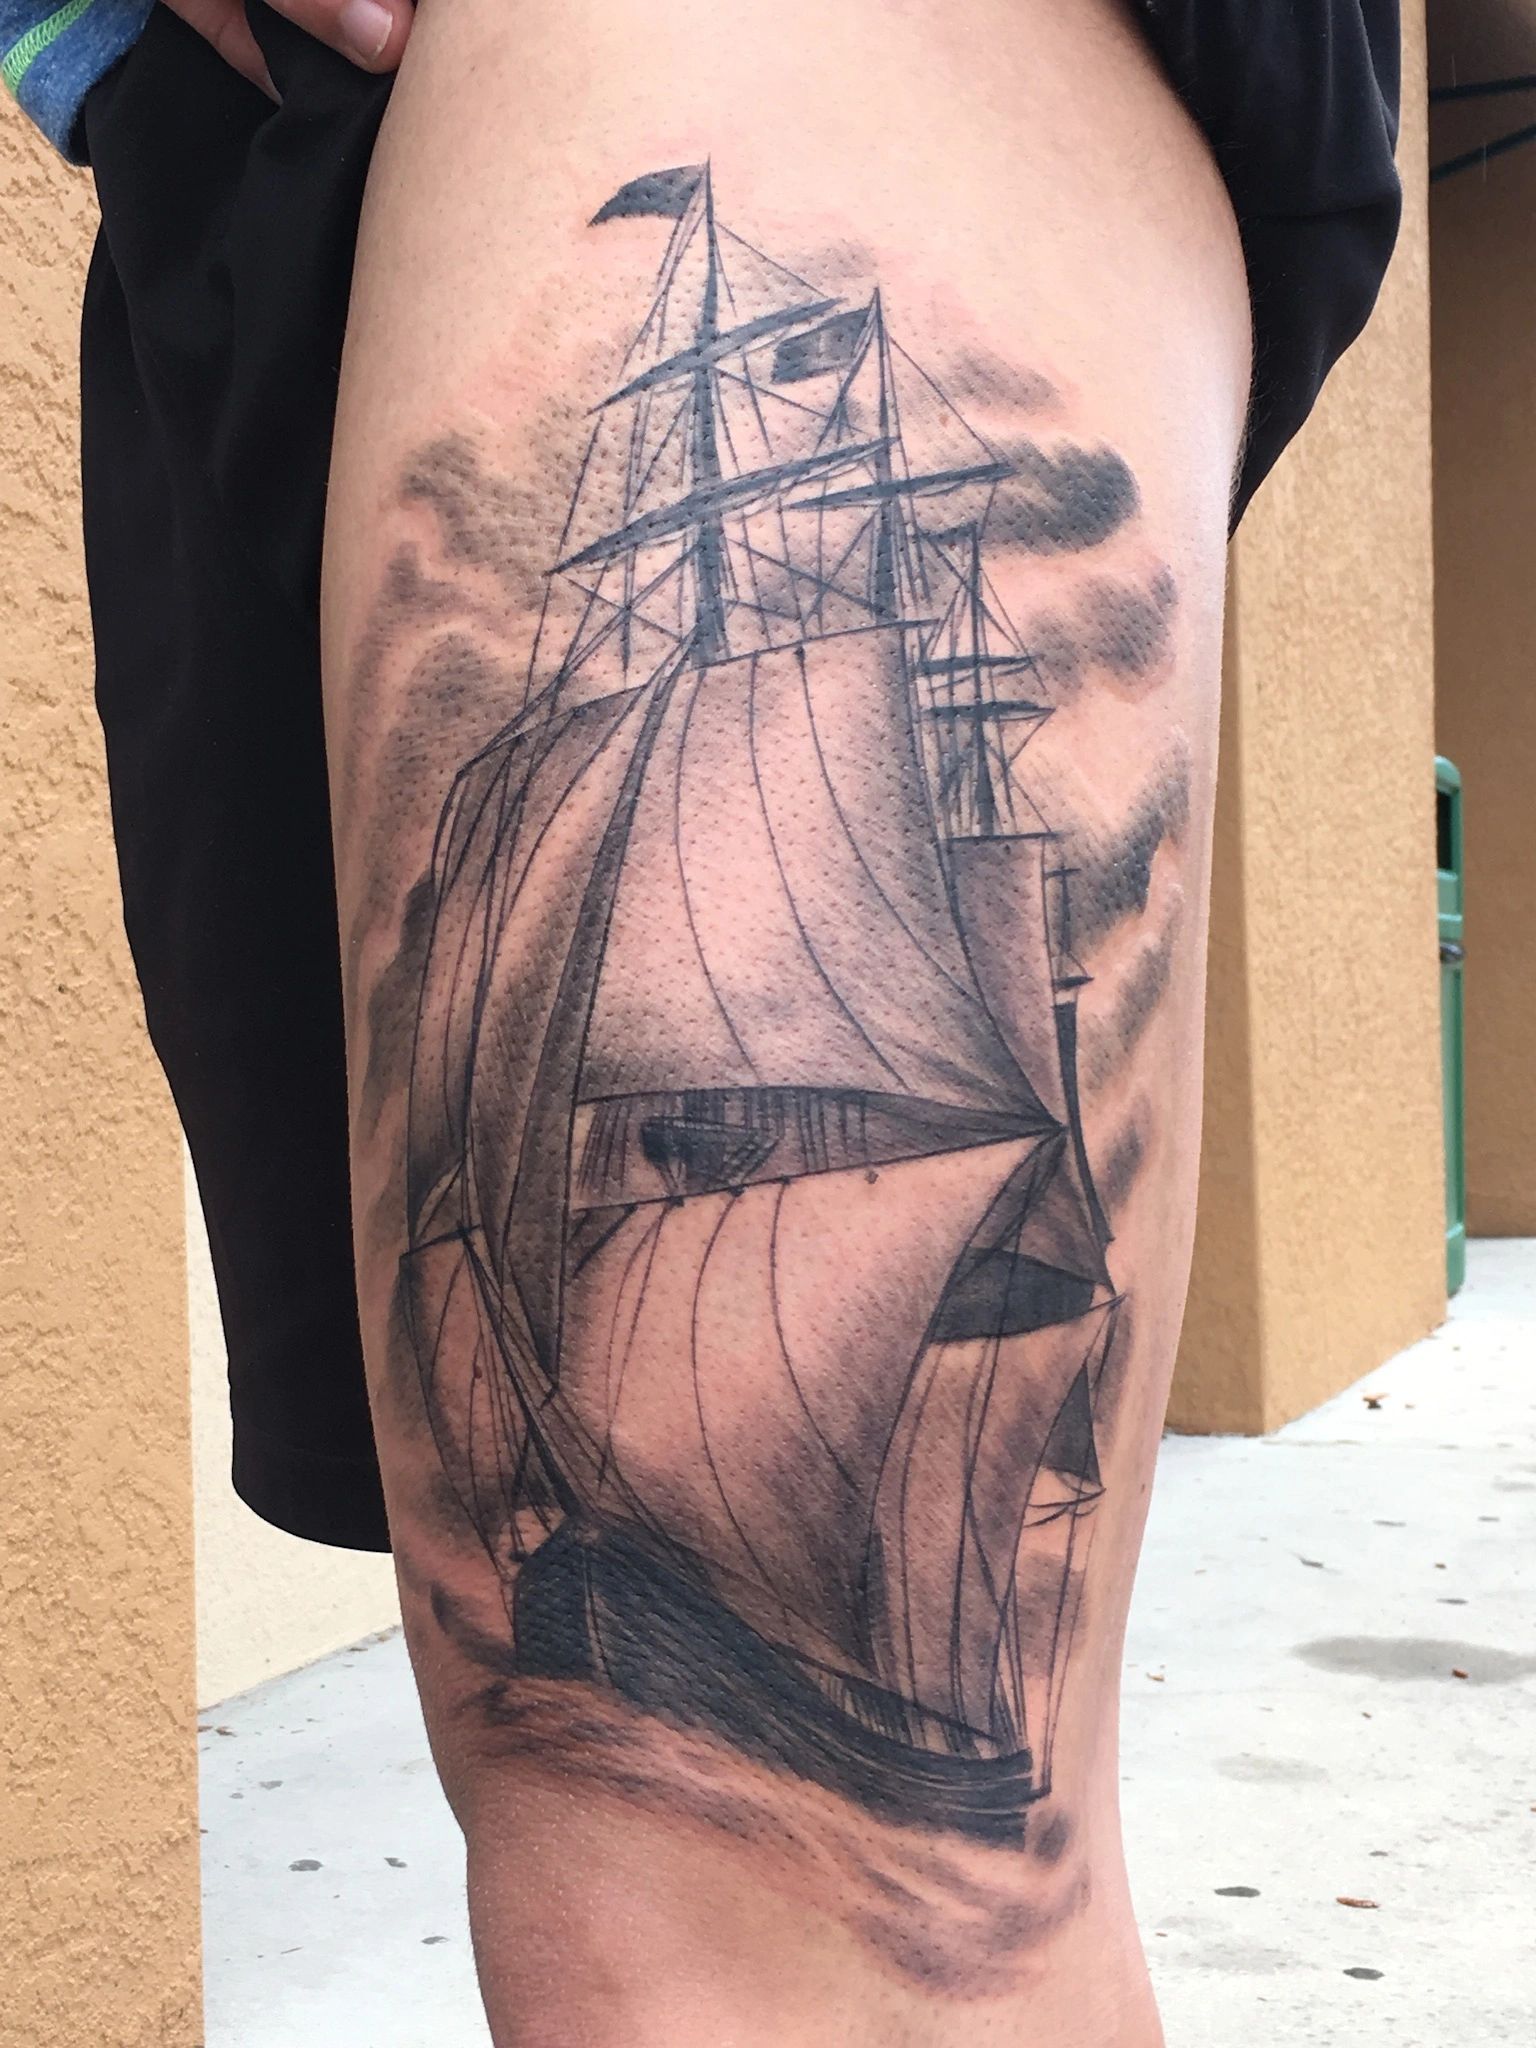 Realistic clipper ship tattoo, pirate ship tattoo, matrix tattoo tattoo 